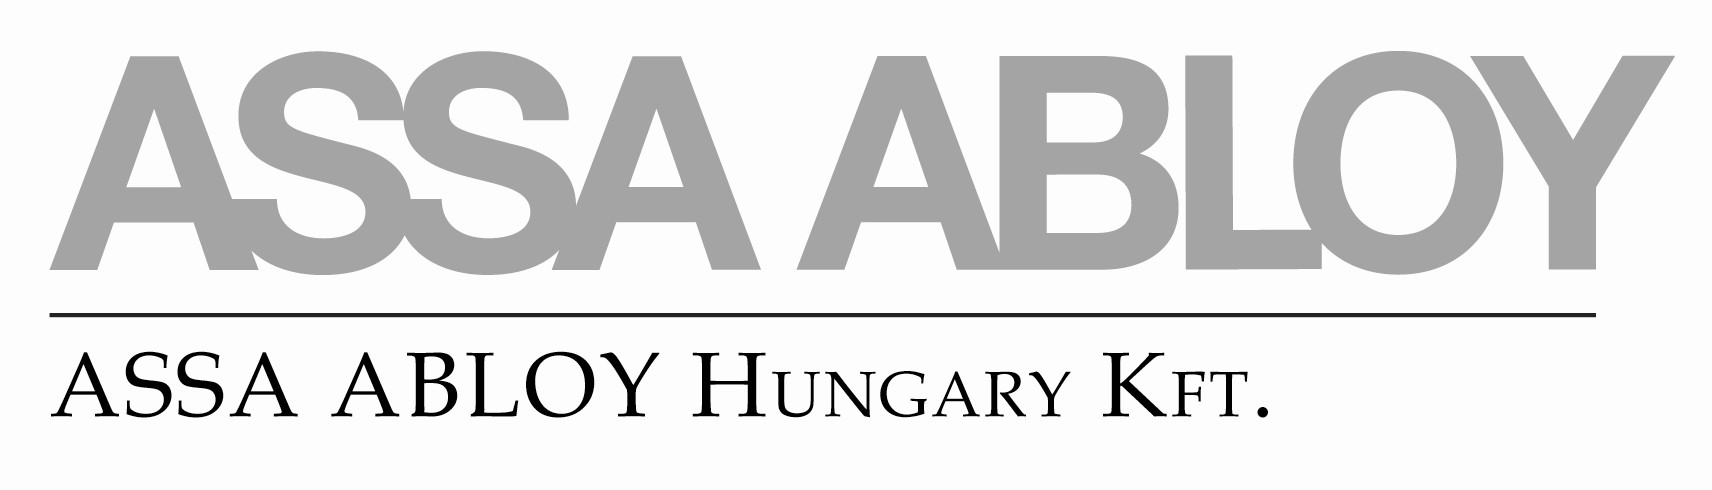 ASSA ABLOY Hungary Kft.jpg